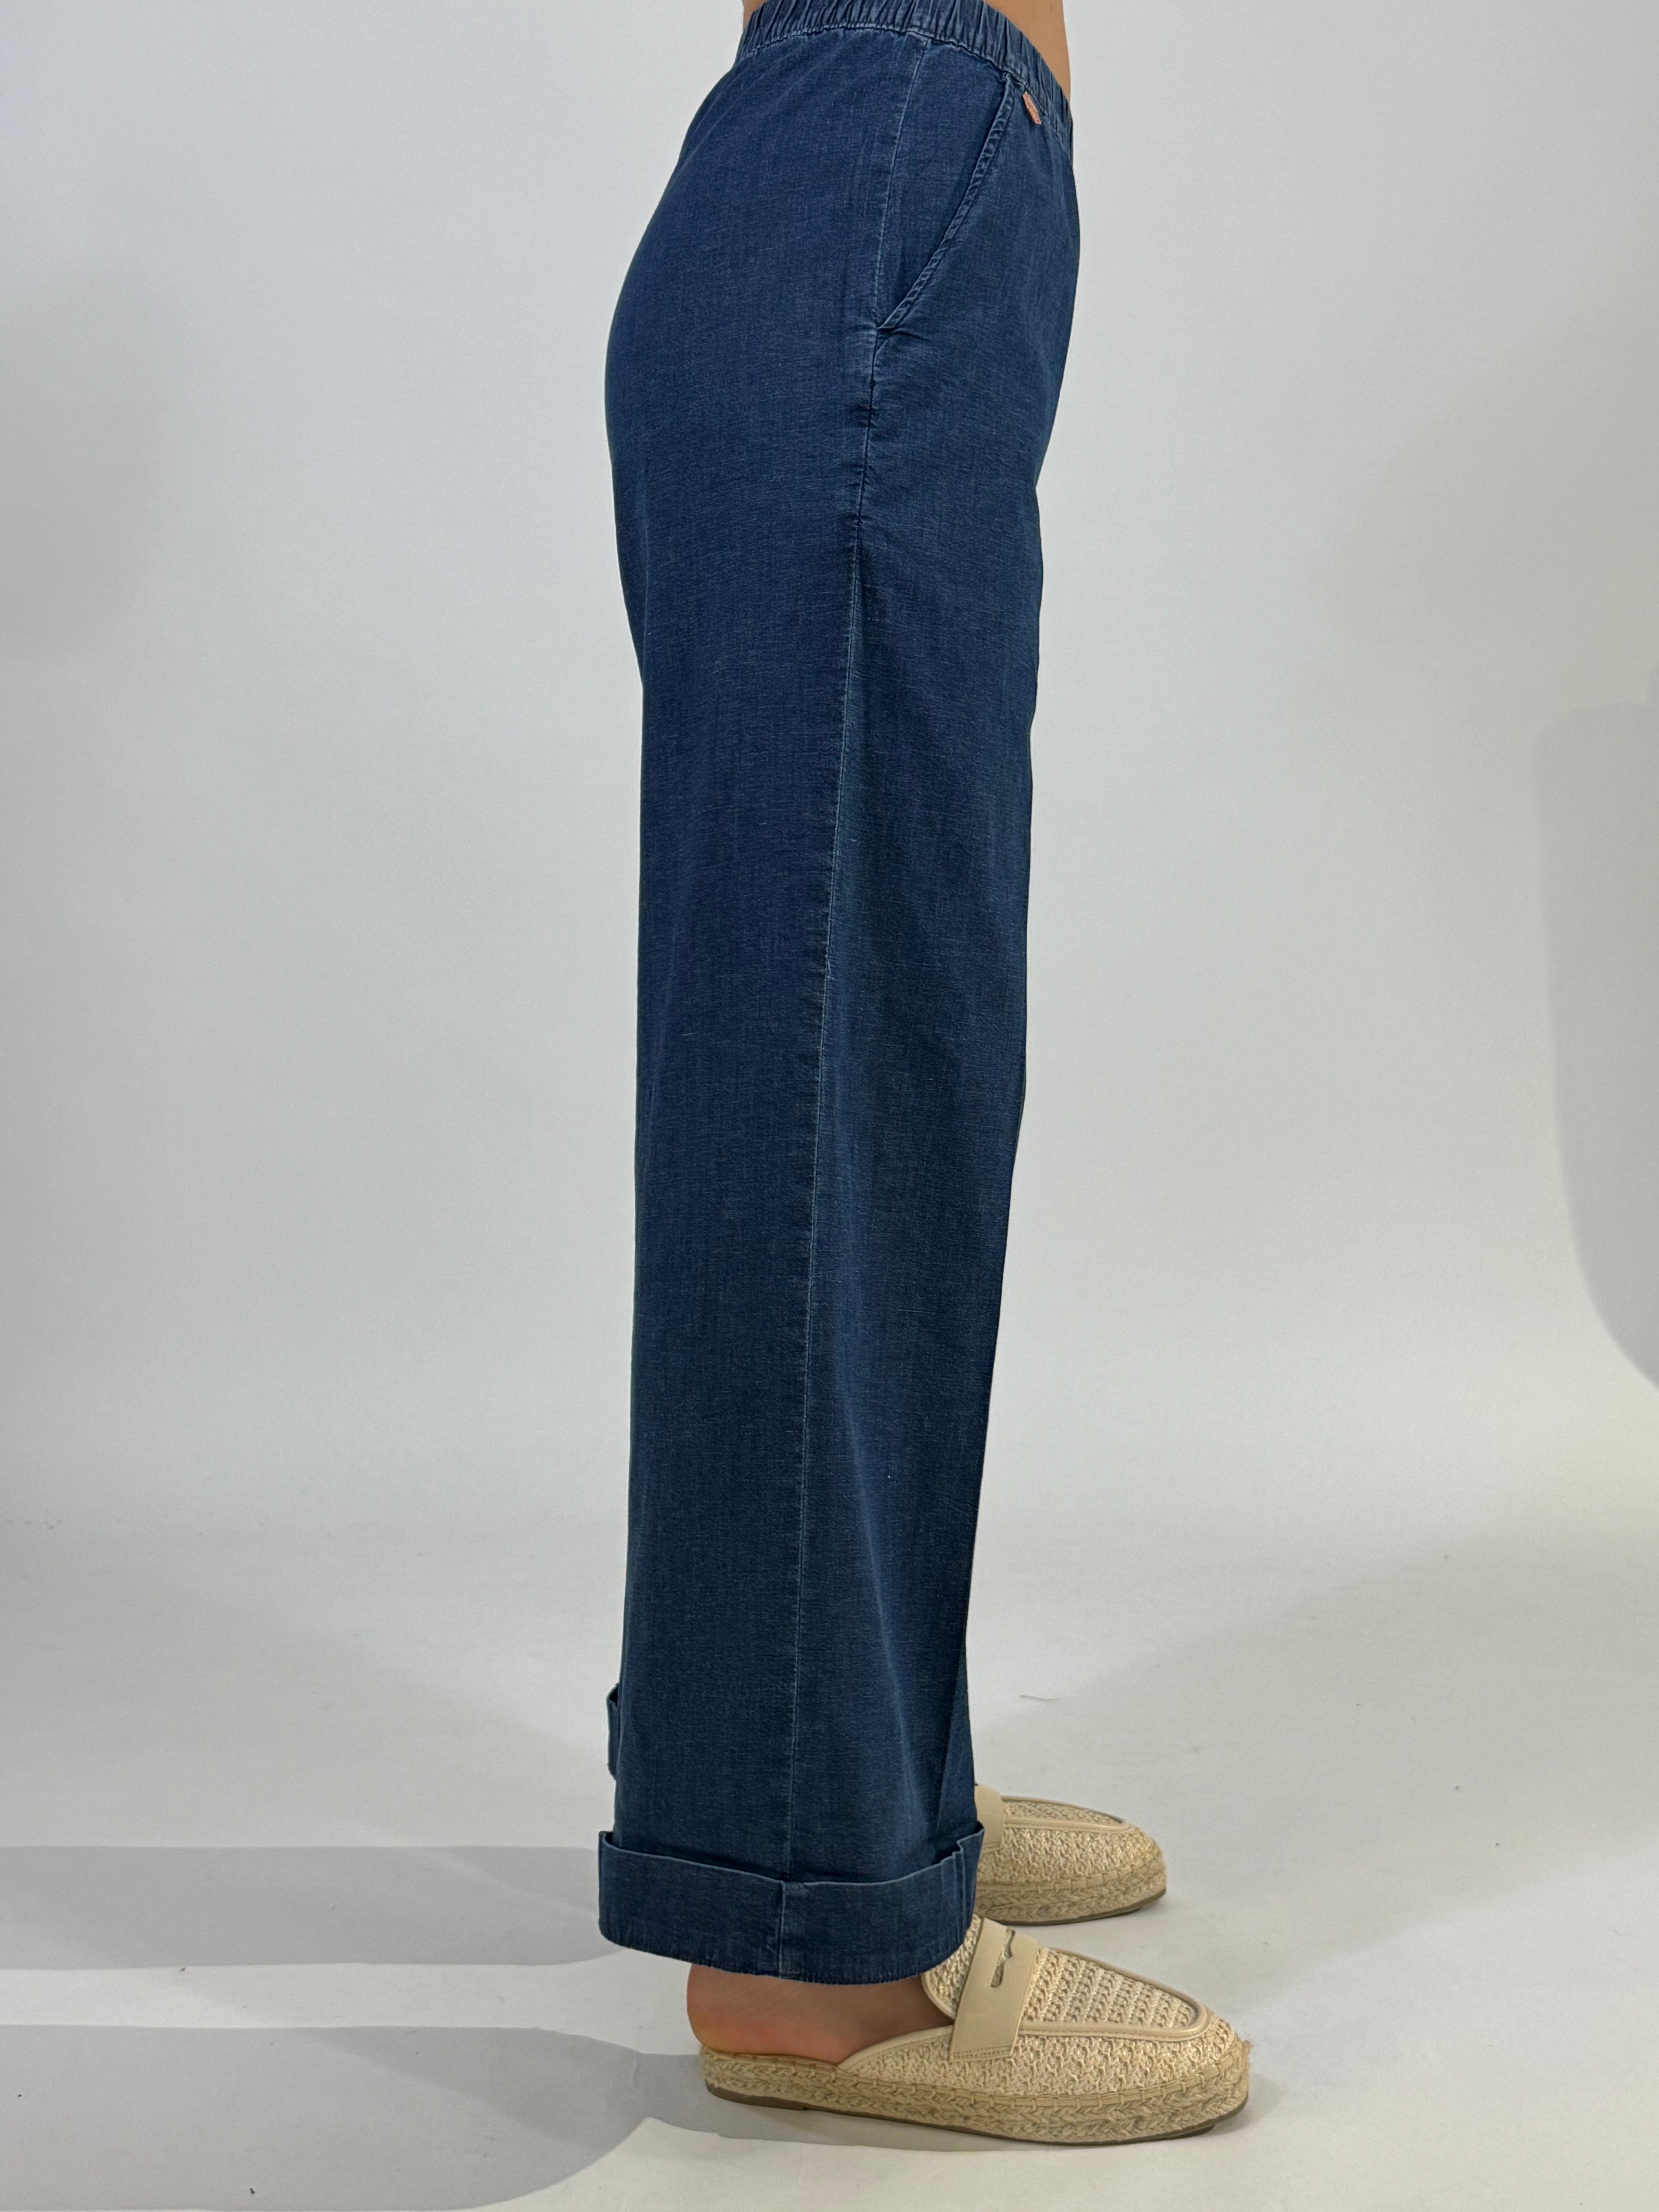 Pantalone Ragno jeans chambray CROPPED